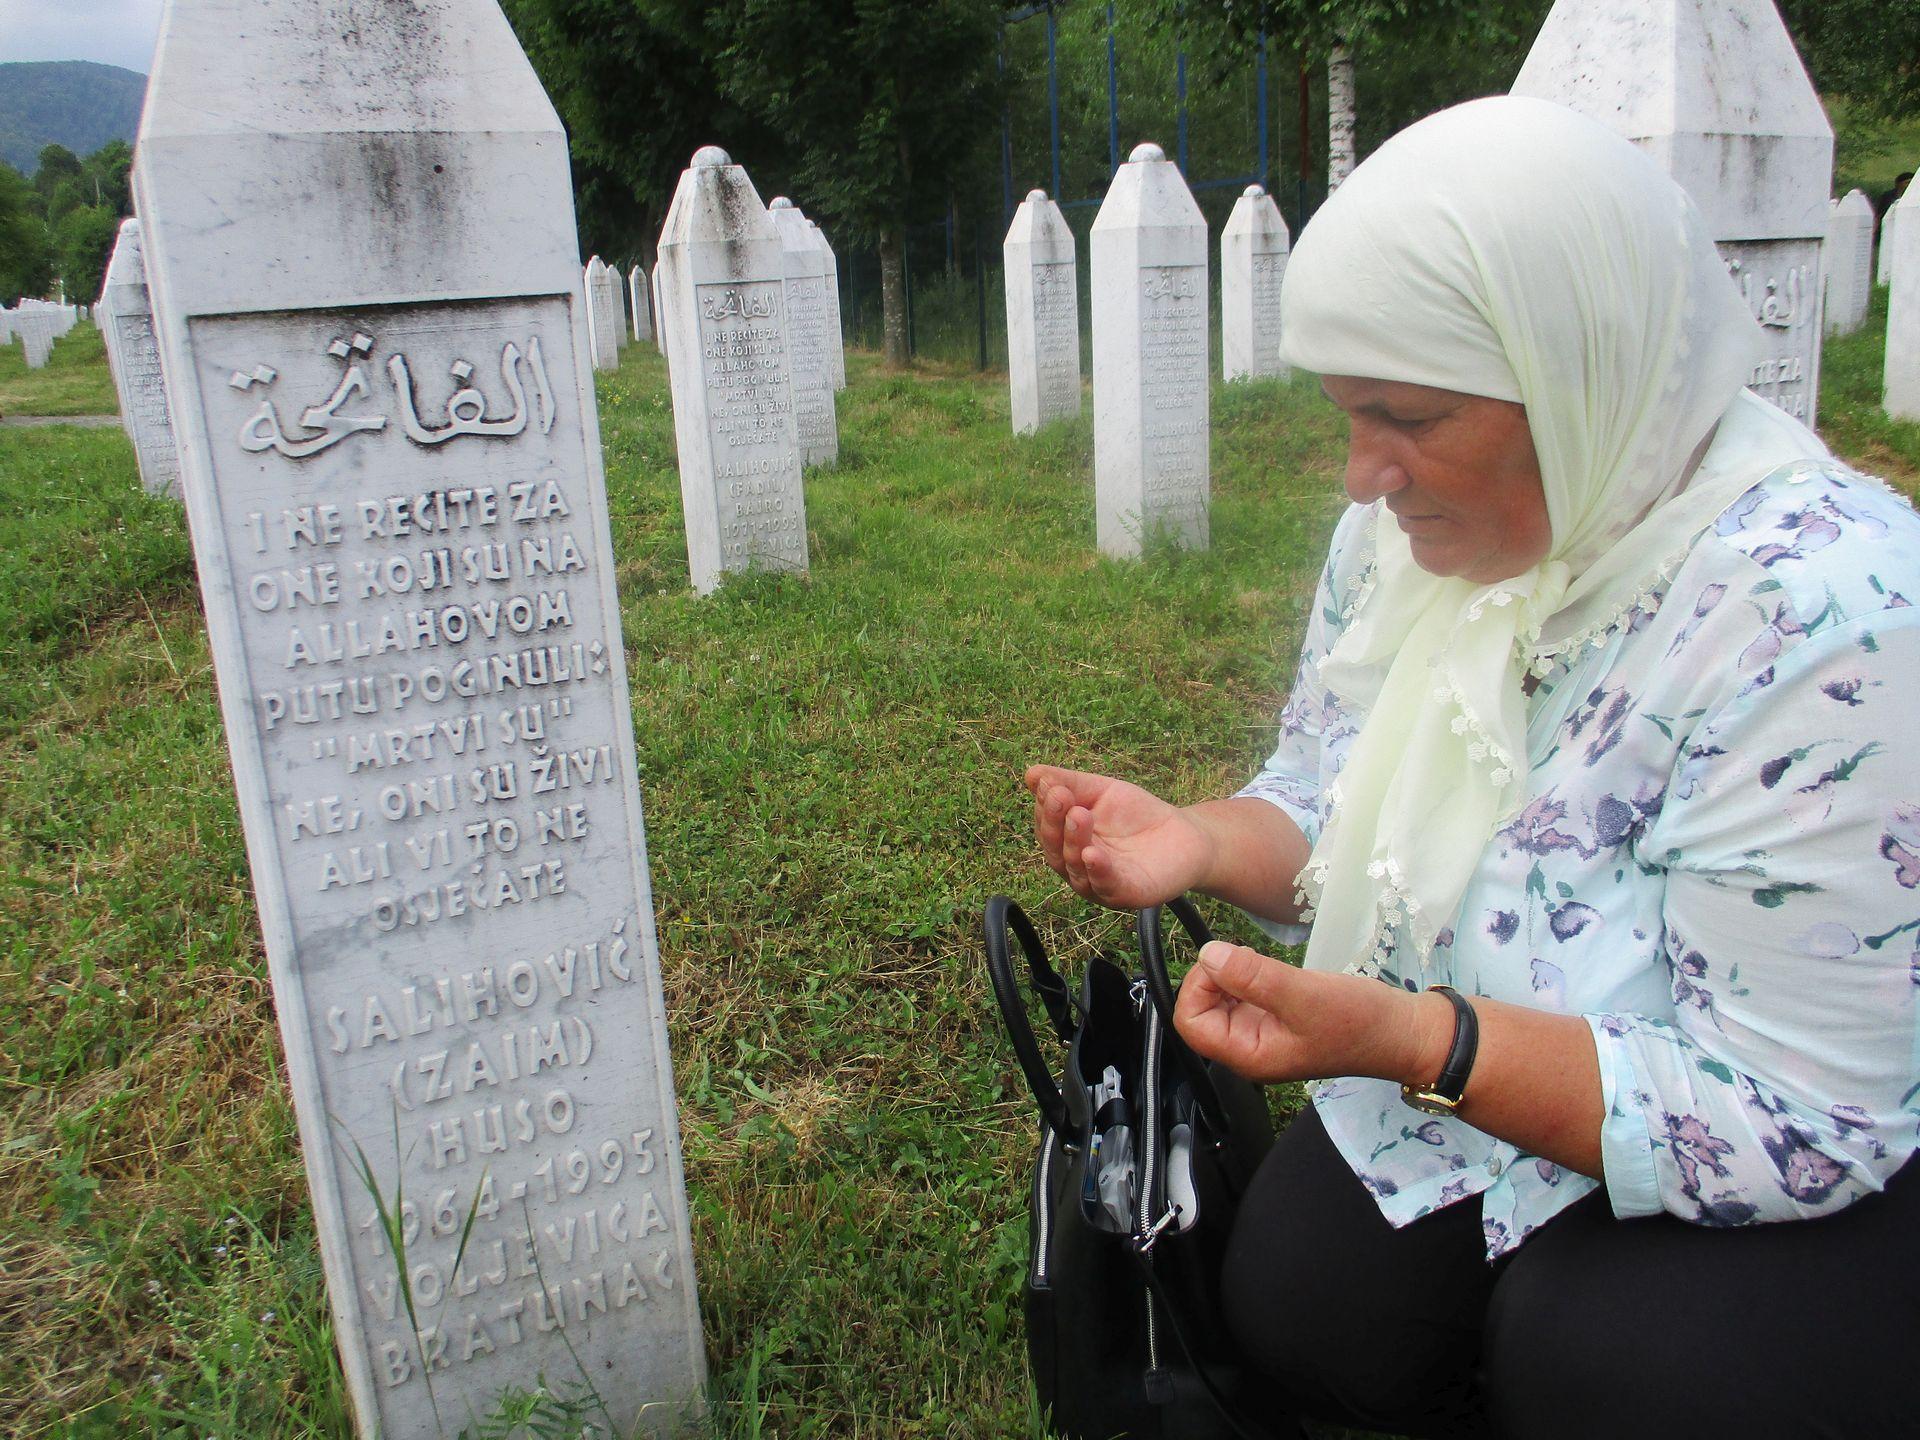 "Borba protiv poricanja: Suočavanje s mržnjom" tema je kojom Velika Britanije ove godine obilježava 27. godišnjicu genocida u Srebrenici - Avaz